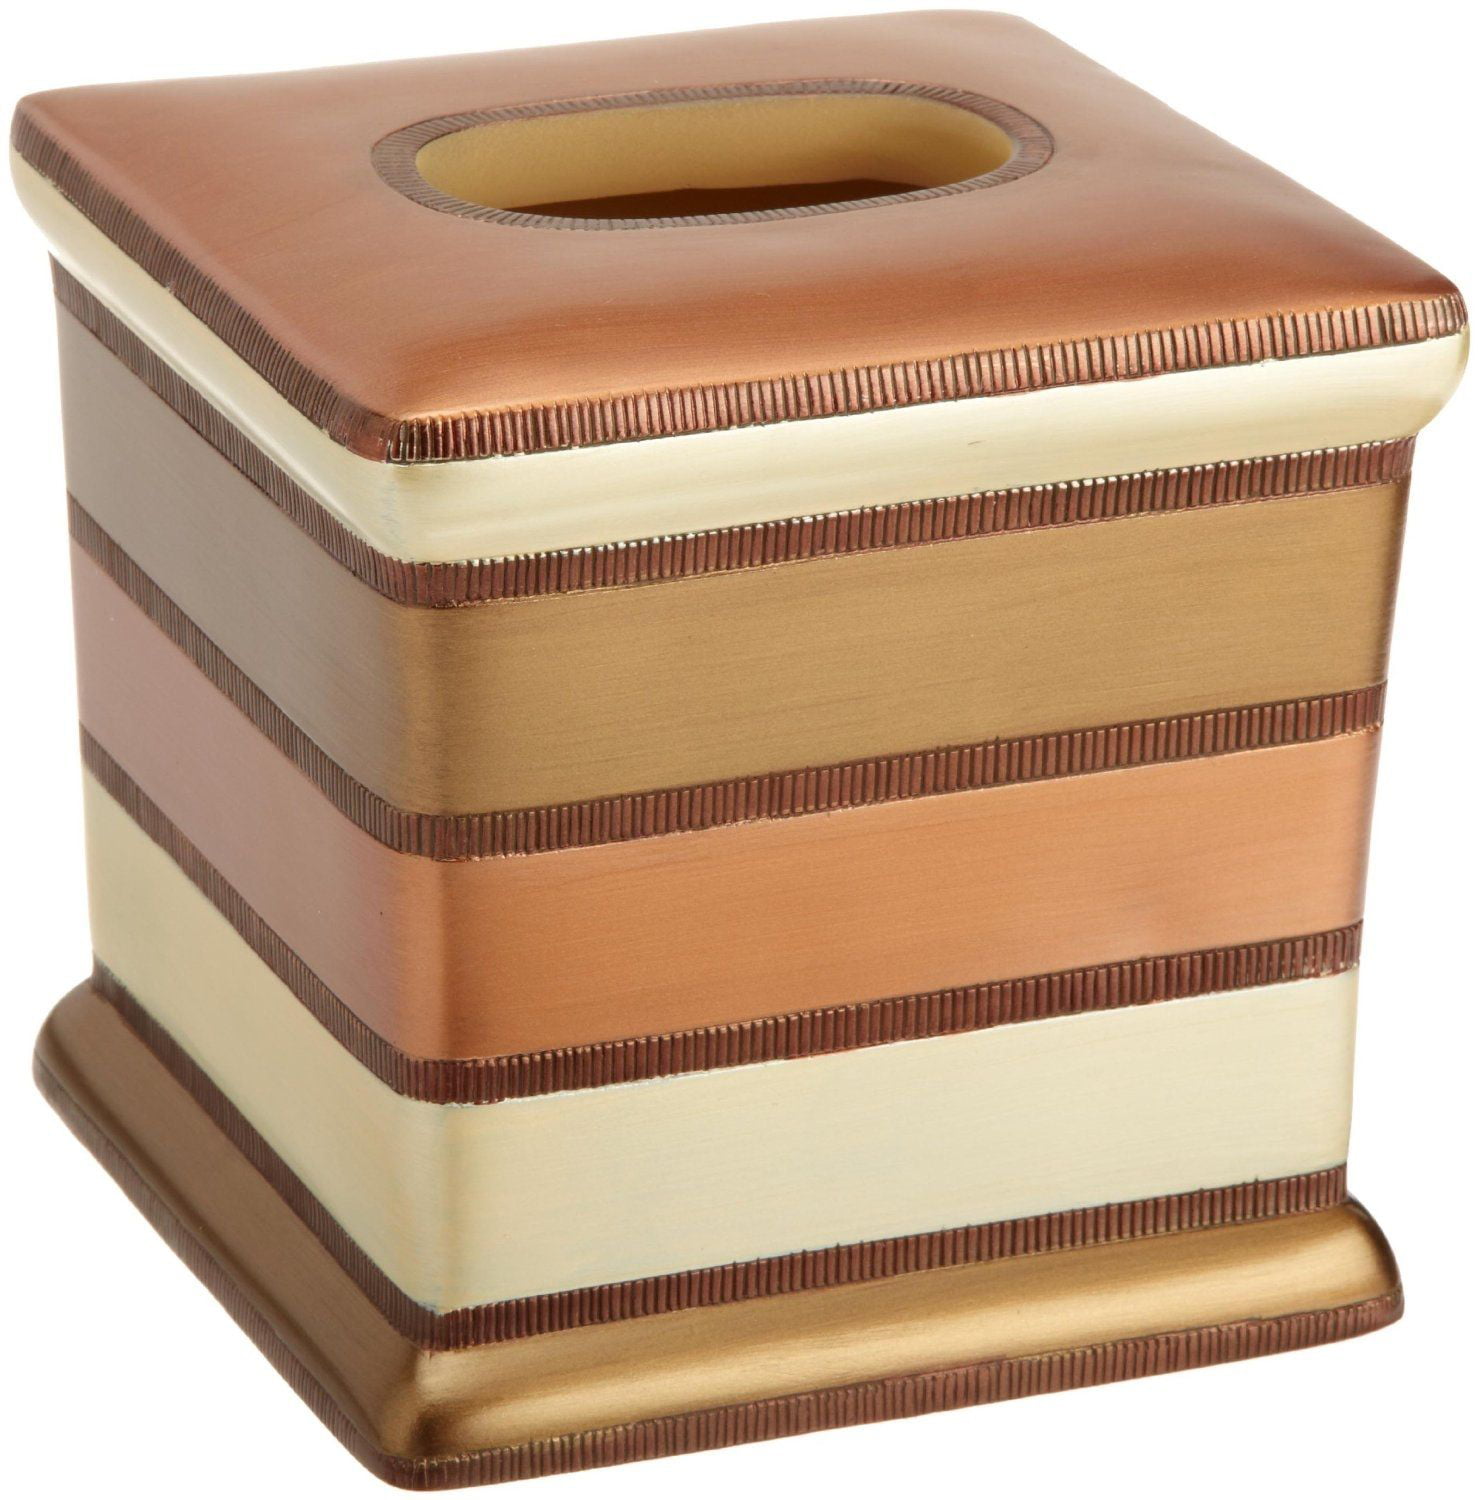 Beige & Copper Bath Collection Tissue Box Holder Popular Bath Phoenix 